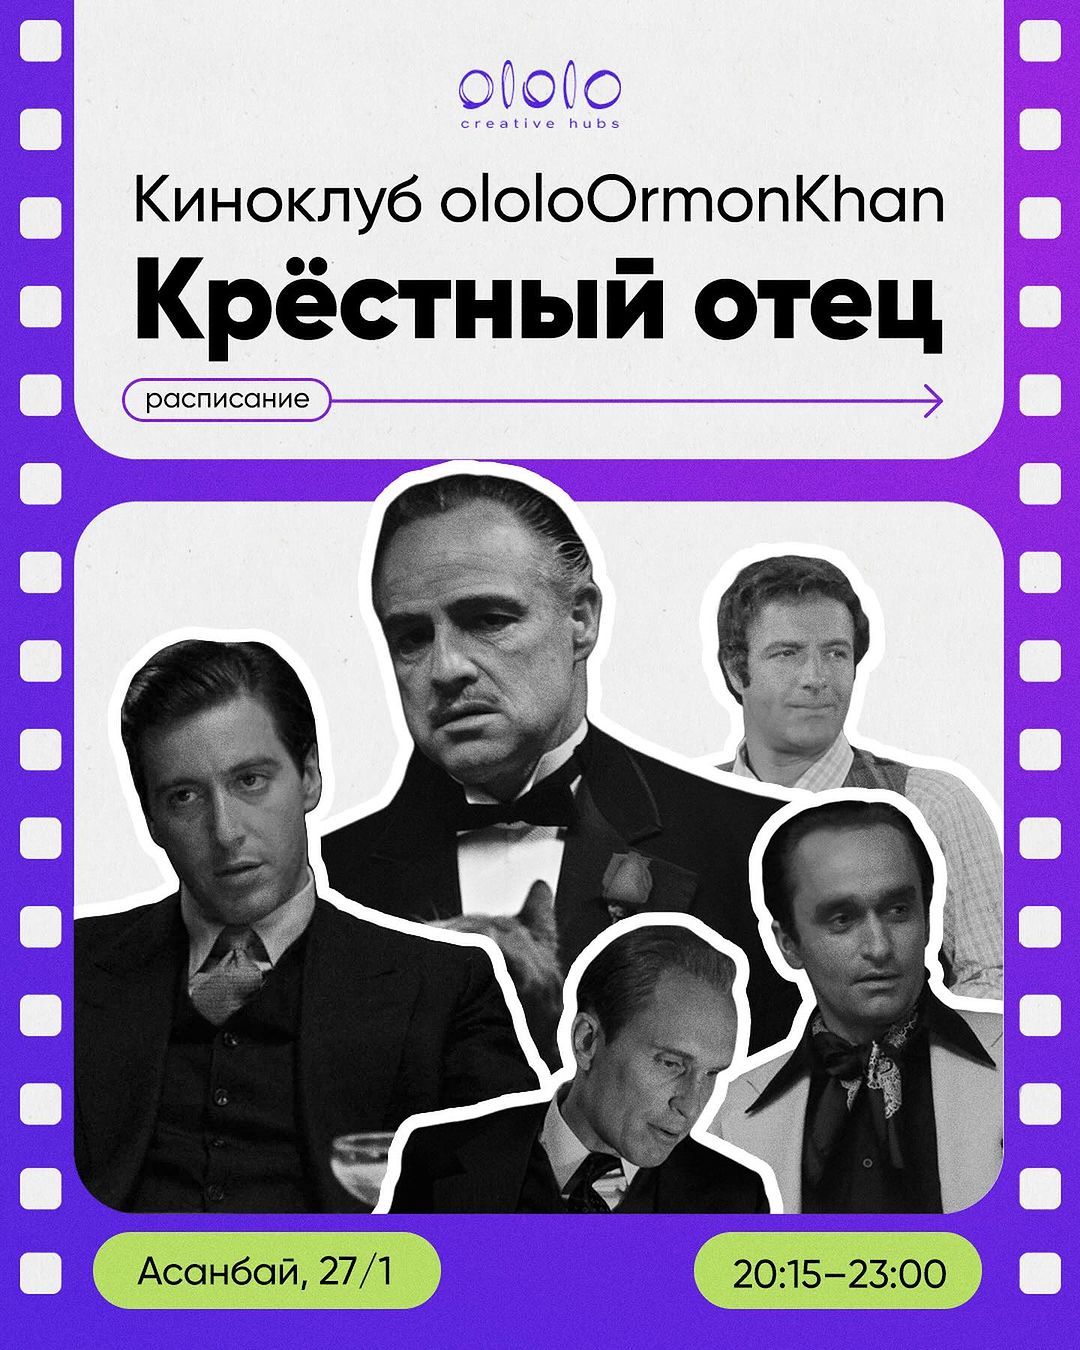 Киноклуб ololoOrmonKhan «Крестный отец»